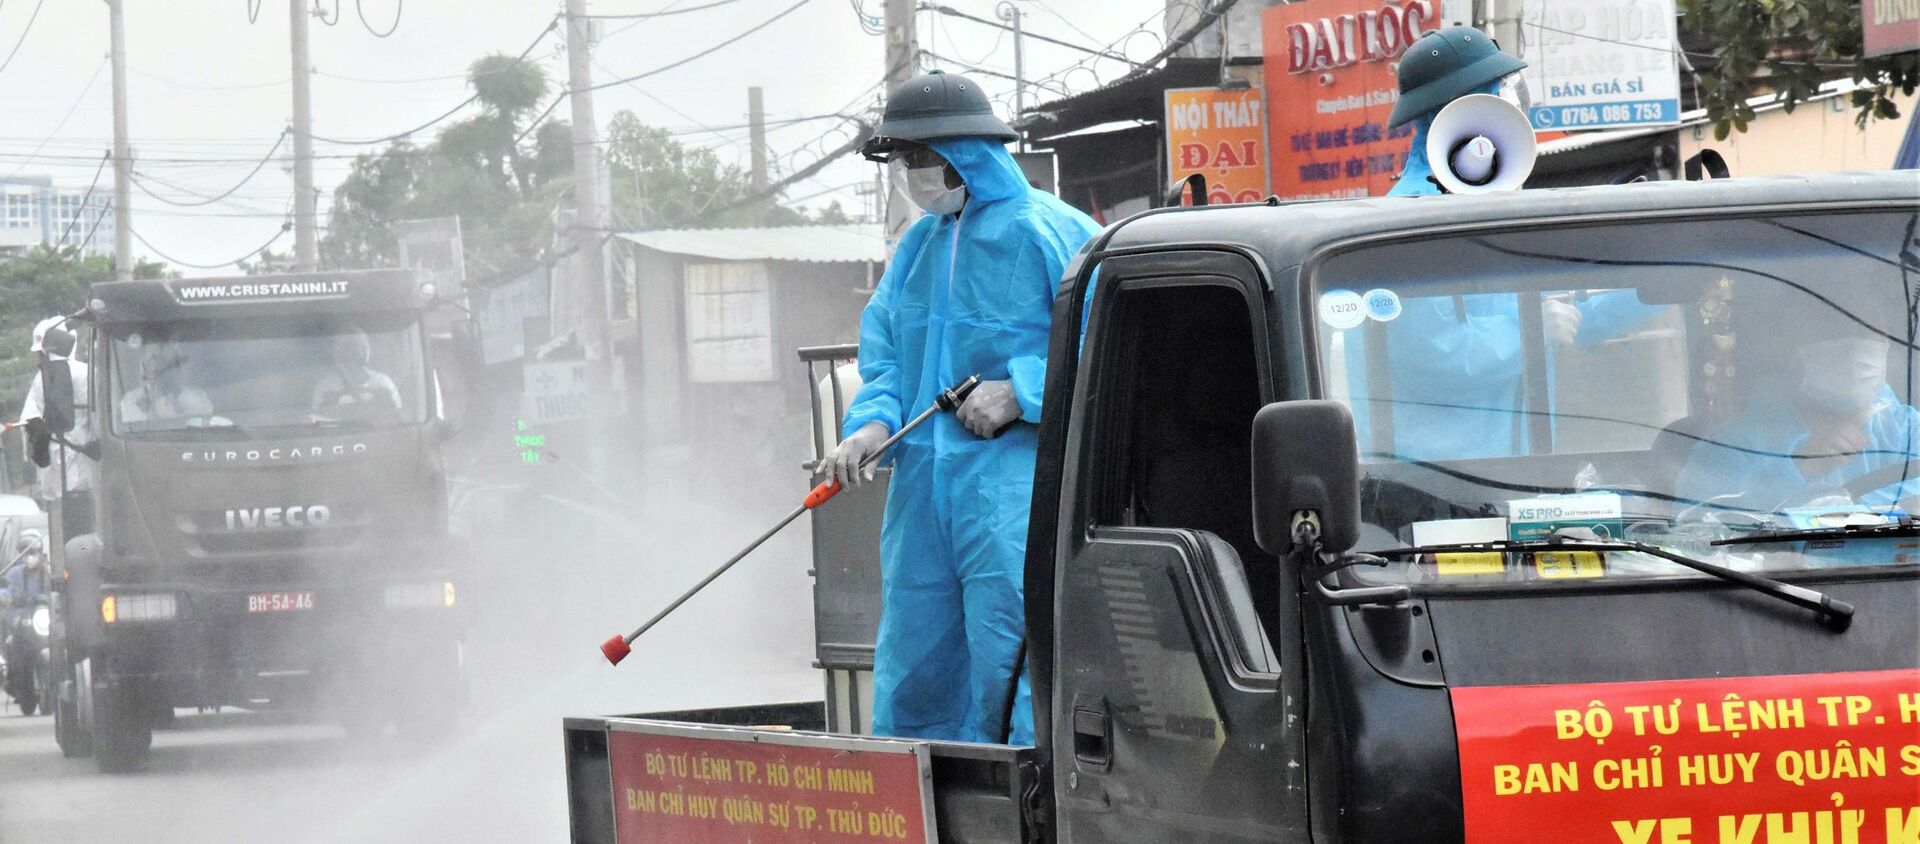 Bộ đội phòng hóa phun khử khuẩn, tiêu độc trên các tuyến đường ở TP Thủ Đức - Sputnik Việt Nam, 1920, 25.07.2021